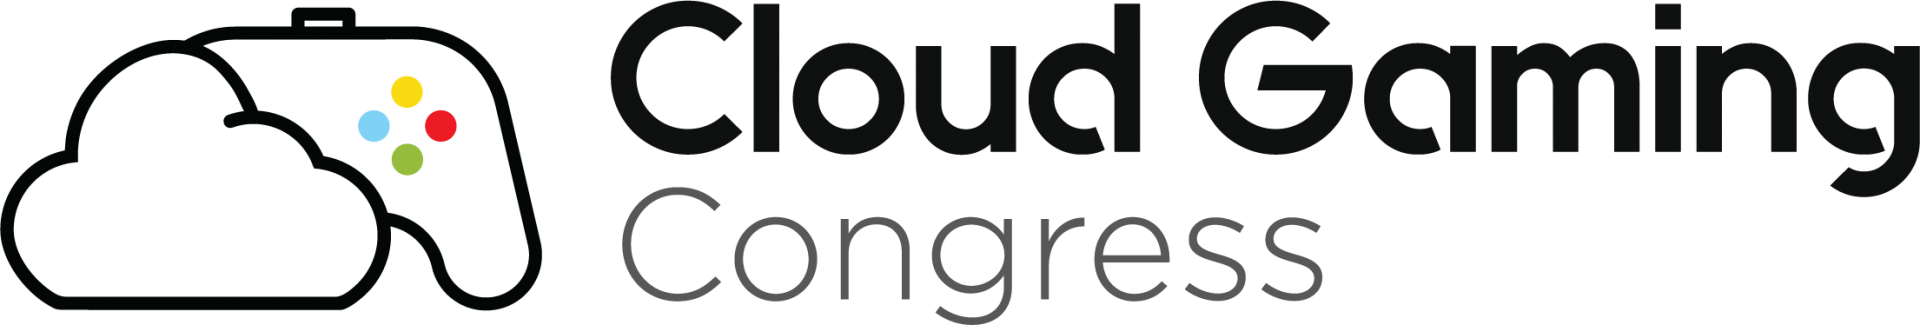 Cloud Gaming Congress